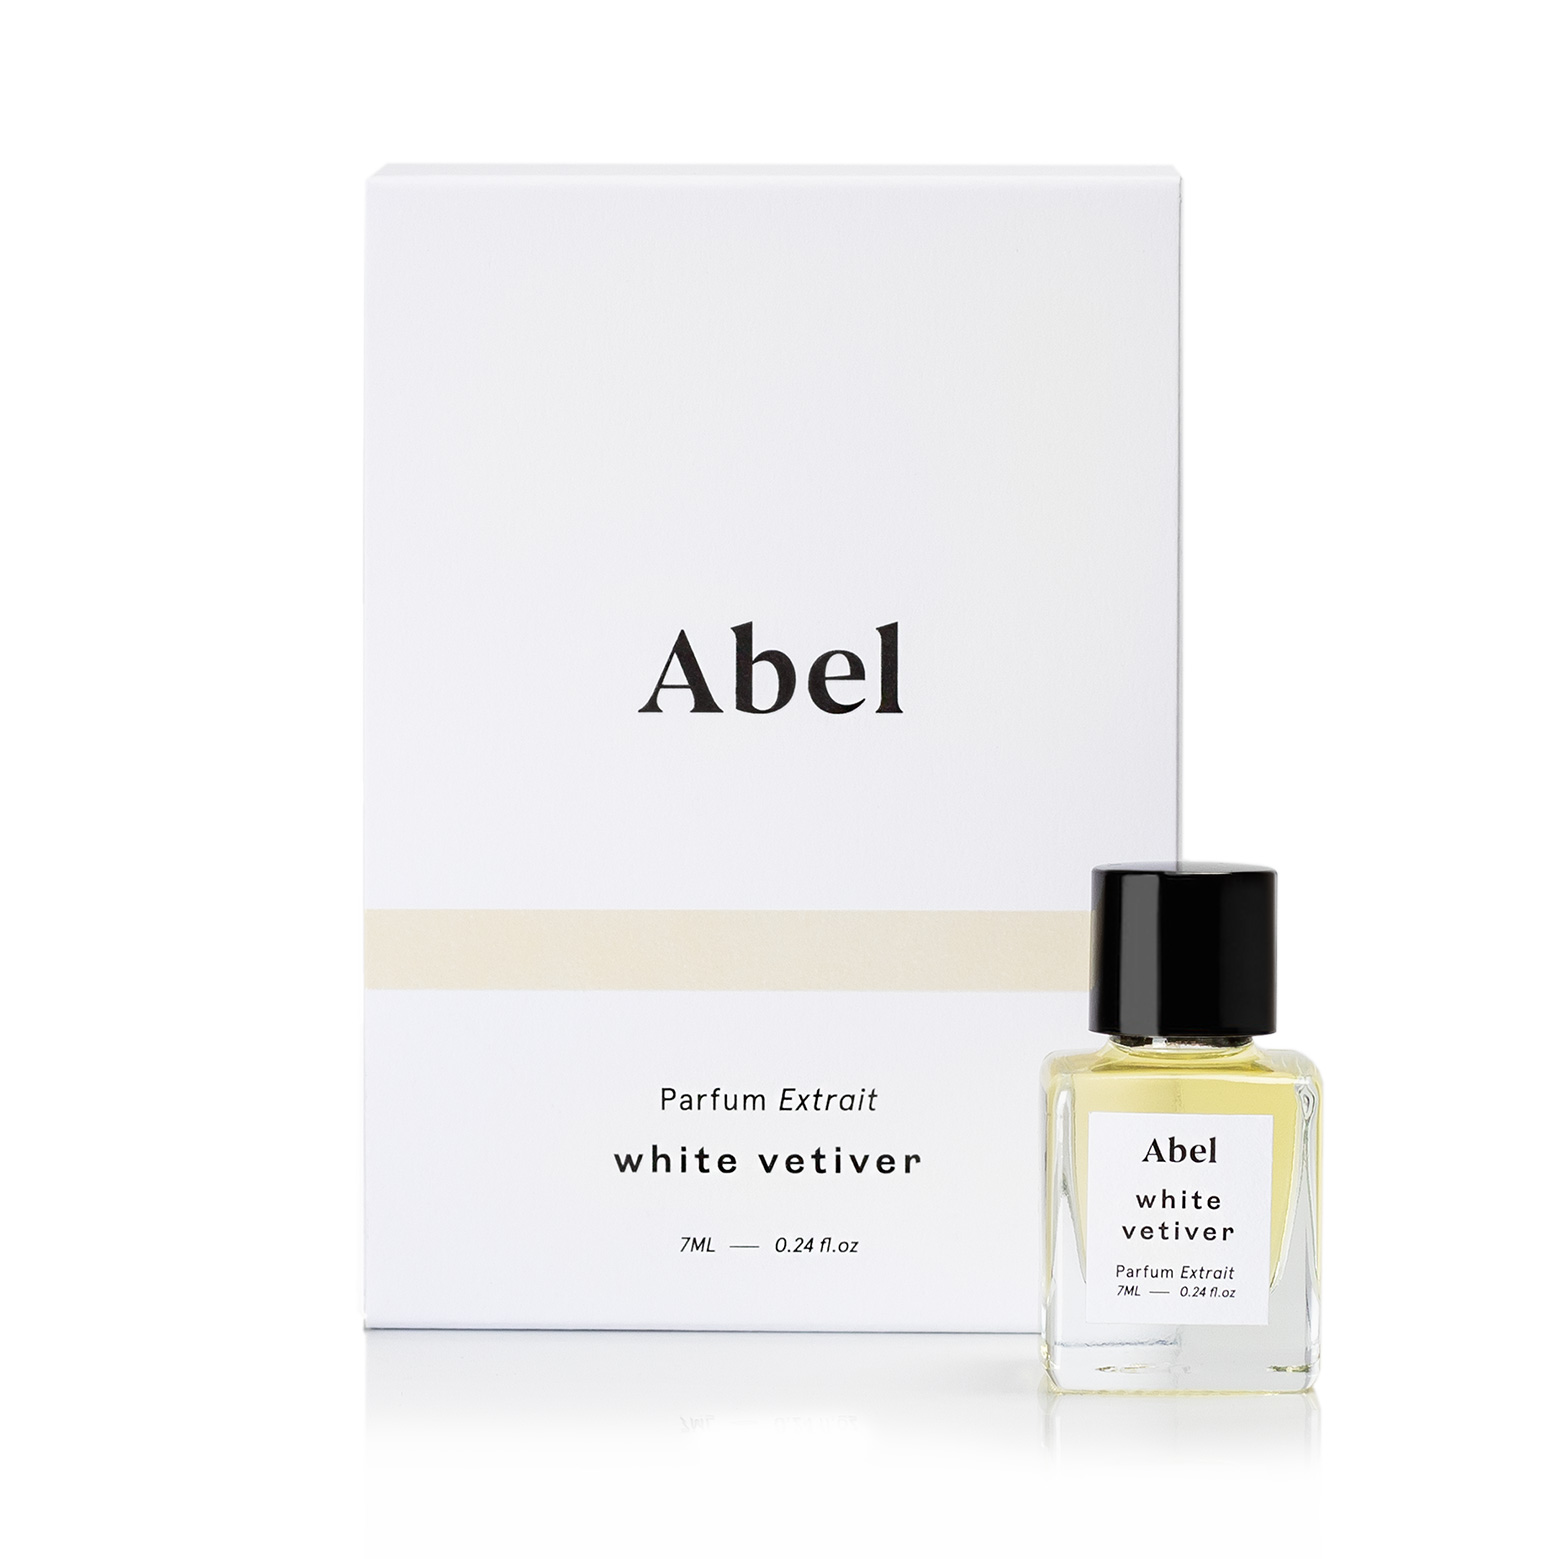 Abel Odor White Vetiver Parfum Extrait 7ml.